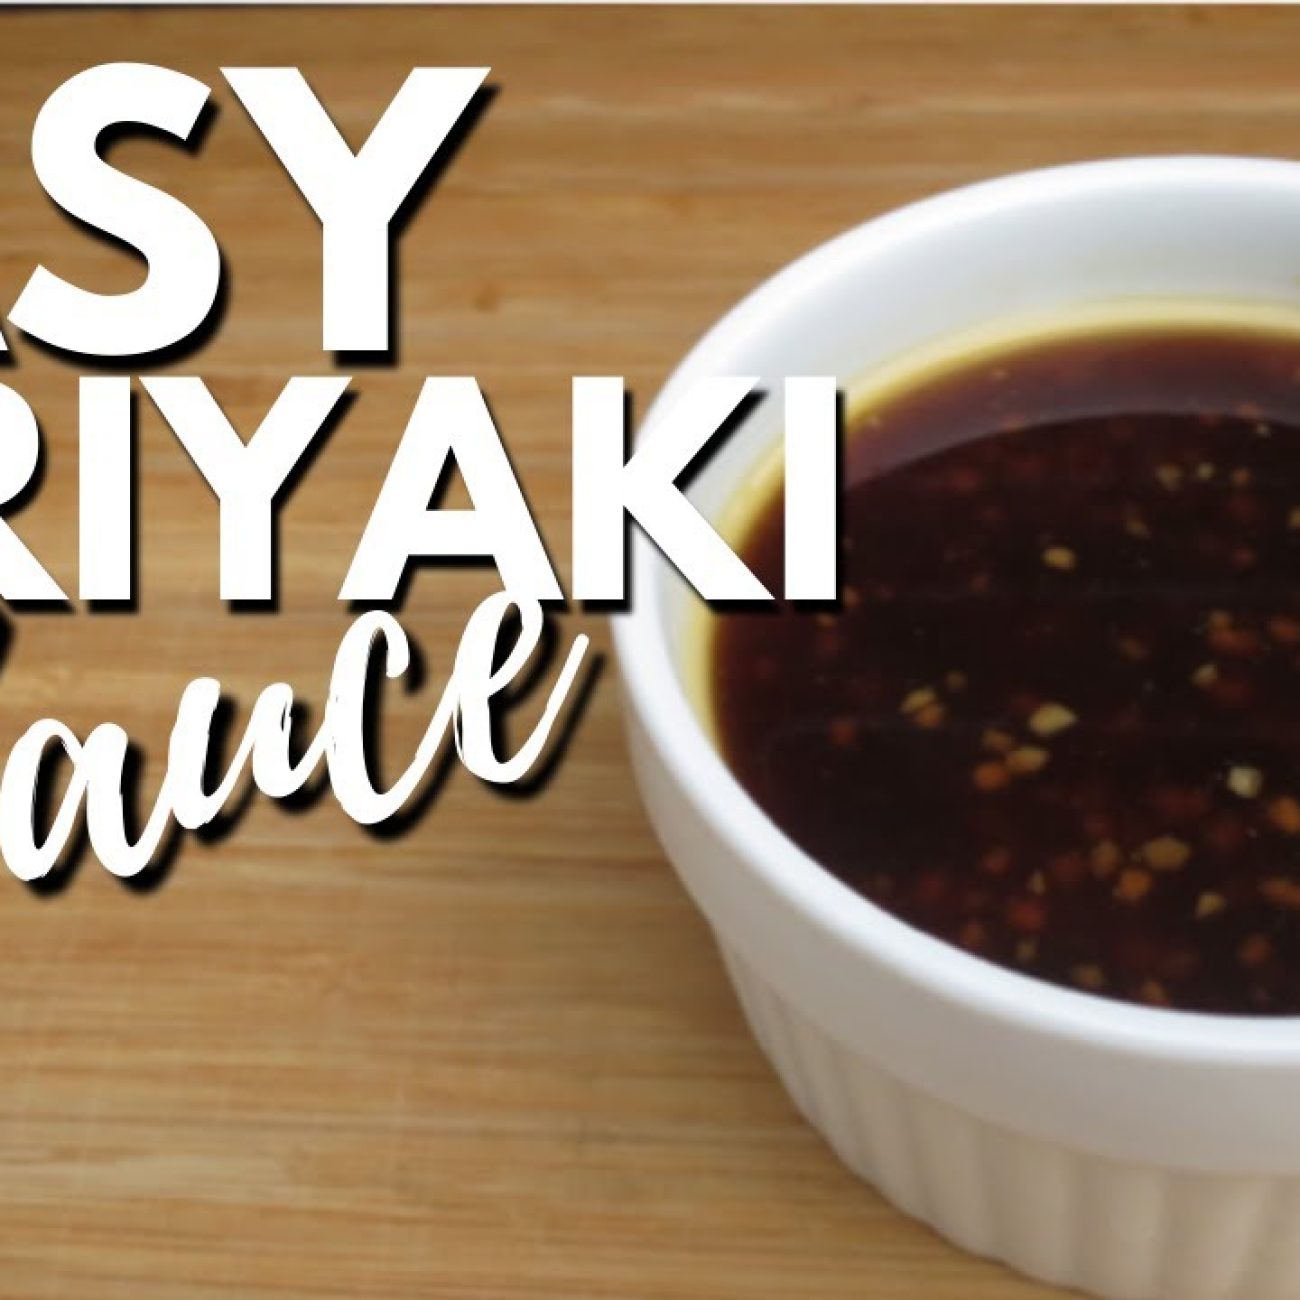 Easy Homemade Teriyaki Sauce Recipe for Dipping